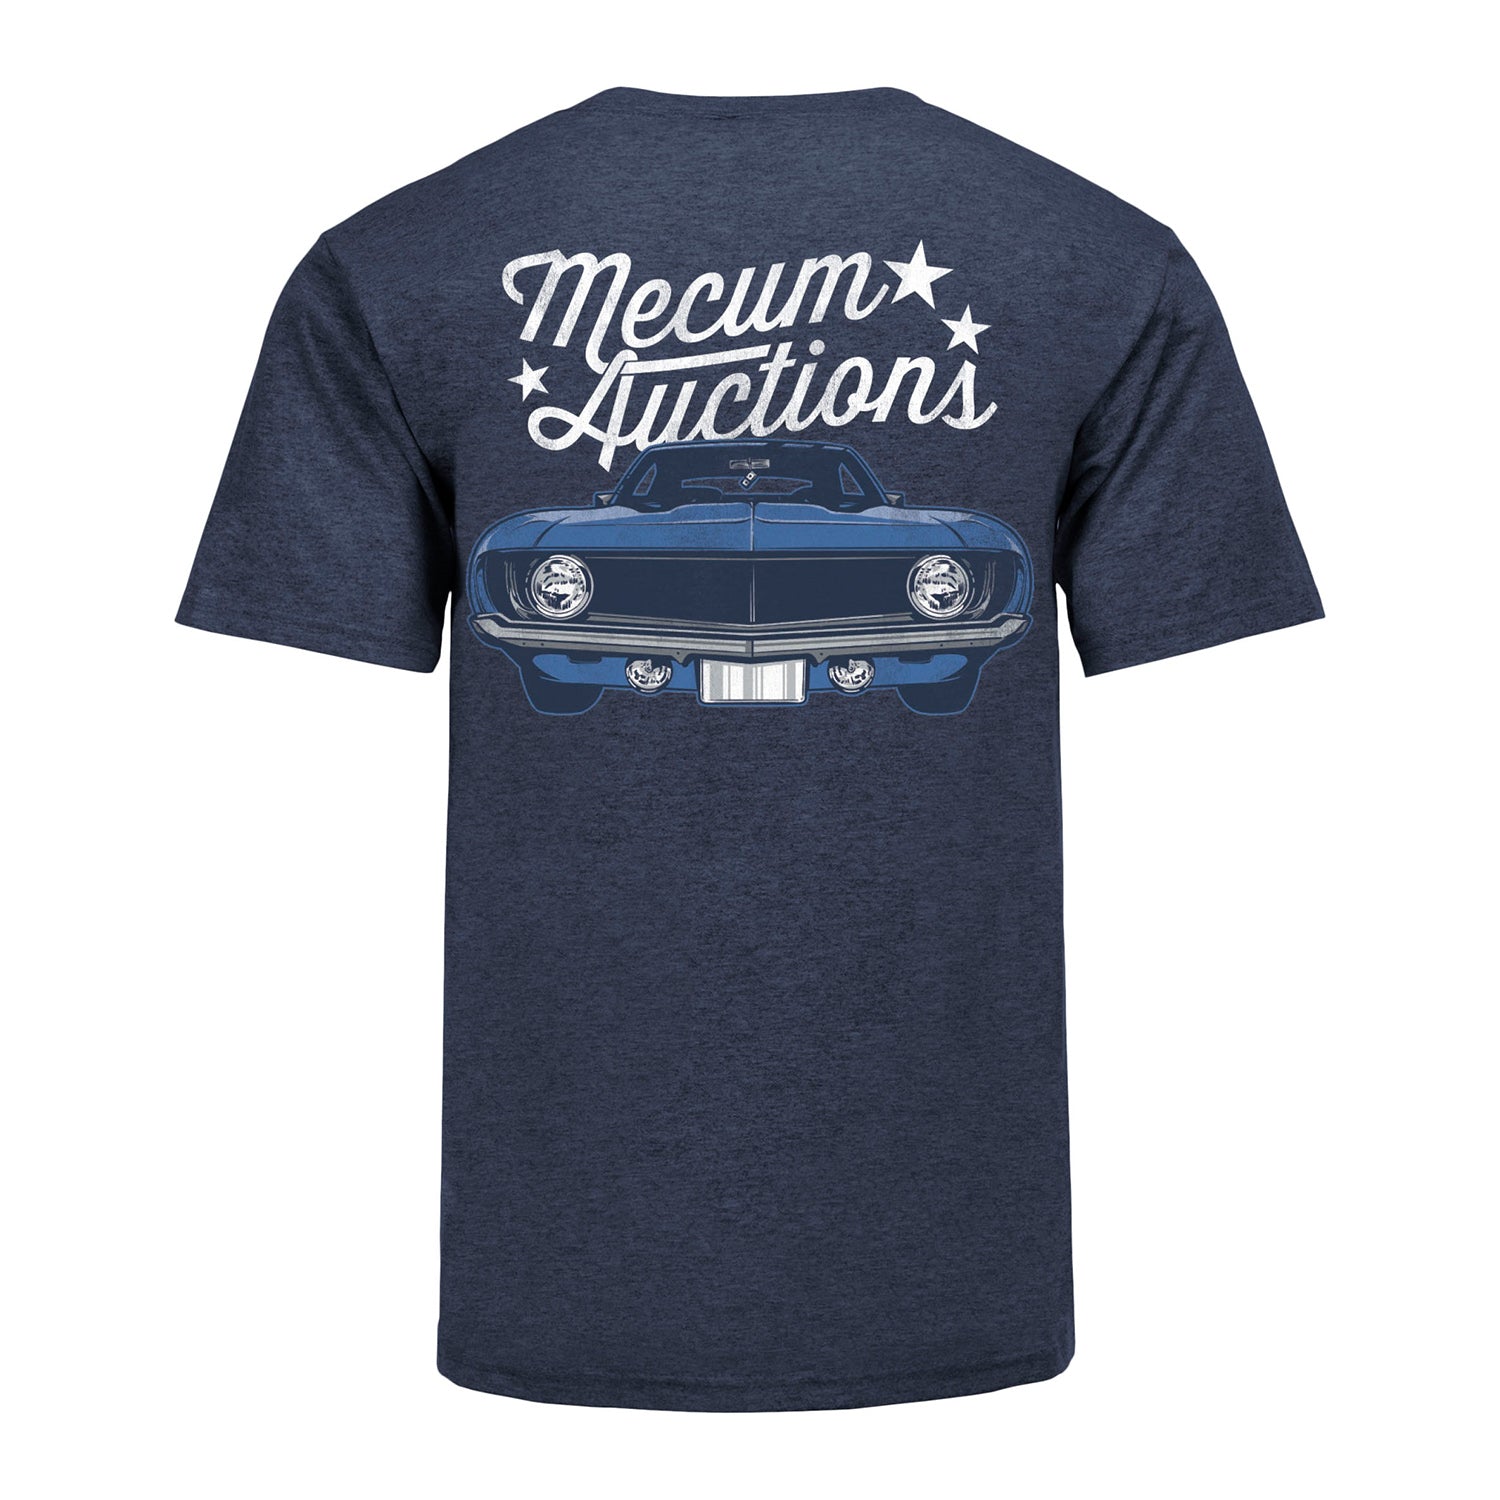 Mecum Auctions Navy Vintage Car Logo T-Shirt - Back View